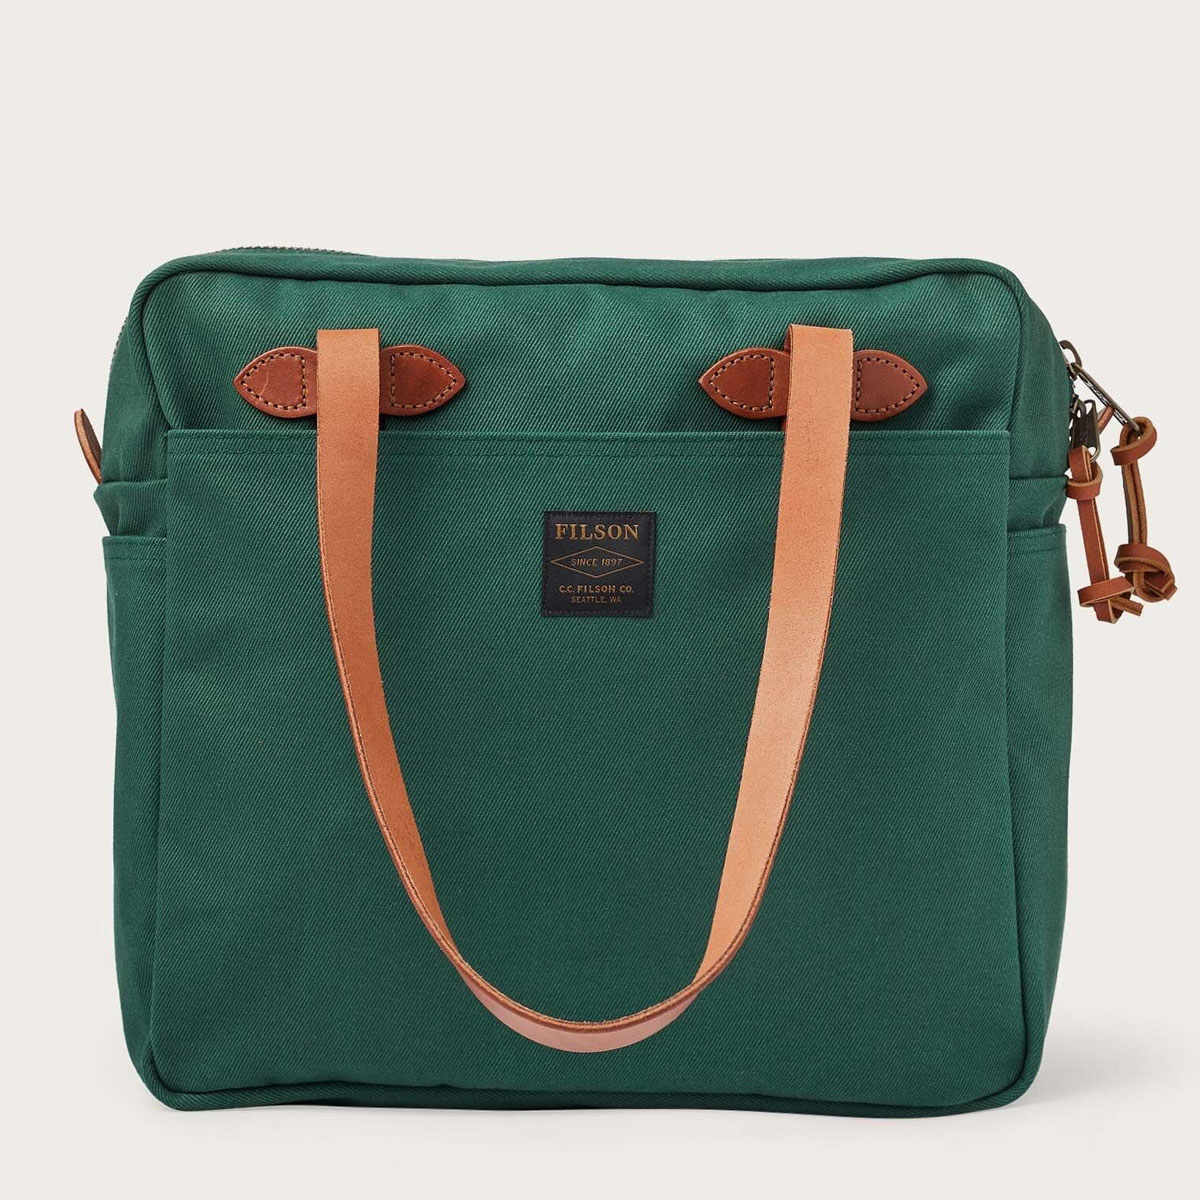 Filson Rugged Twill Tote Bag With Zipper Hemlock, gemaakt voor mannen en vrouwen die van gemak, stijl en kwaliteit houden